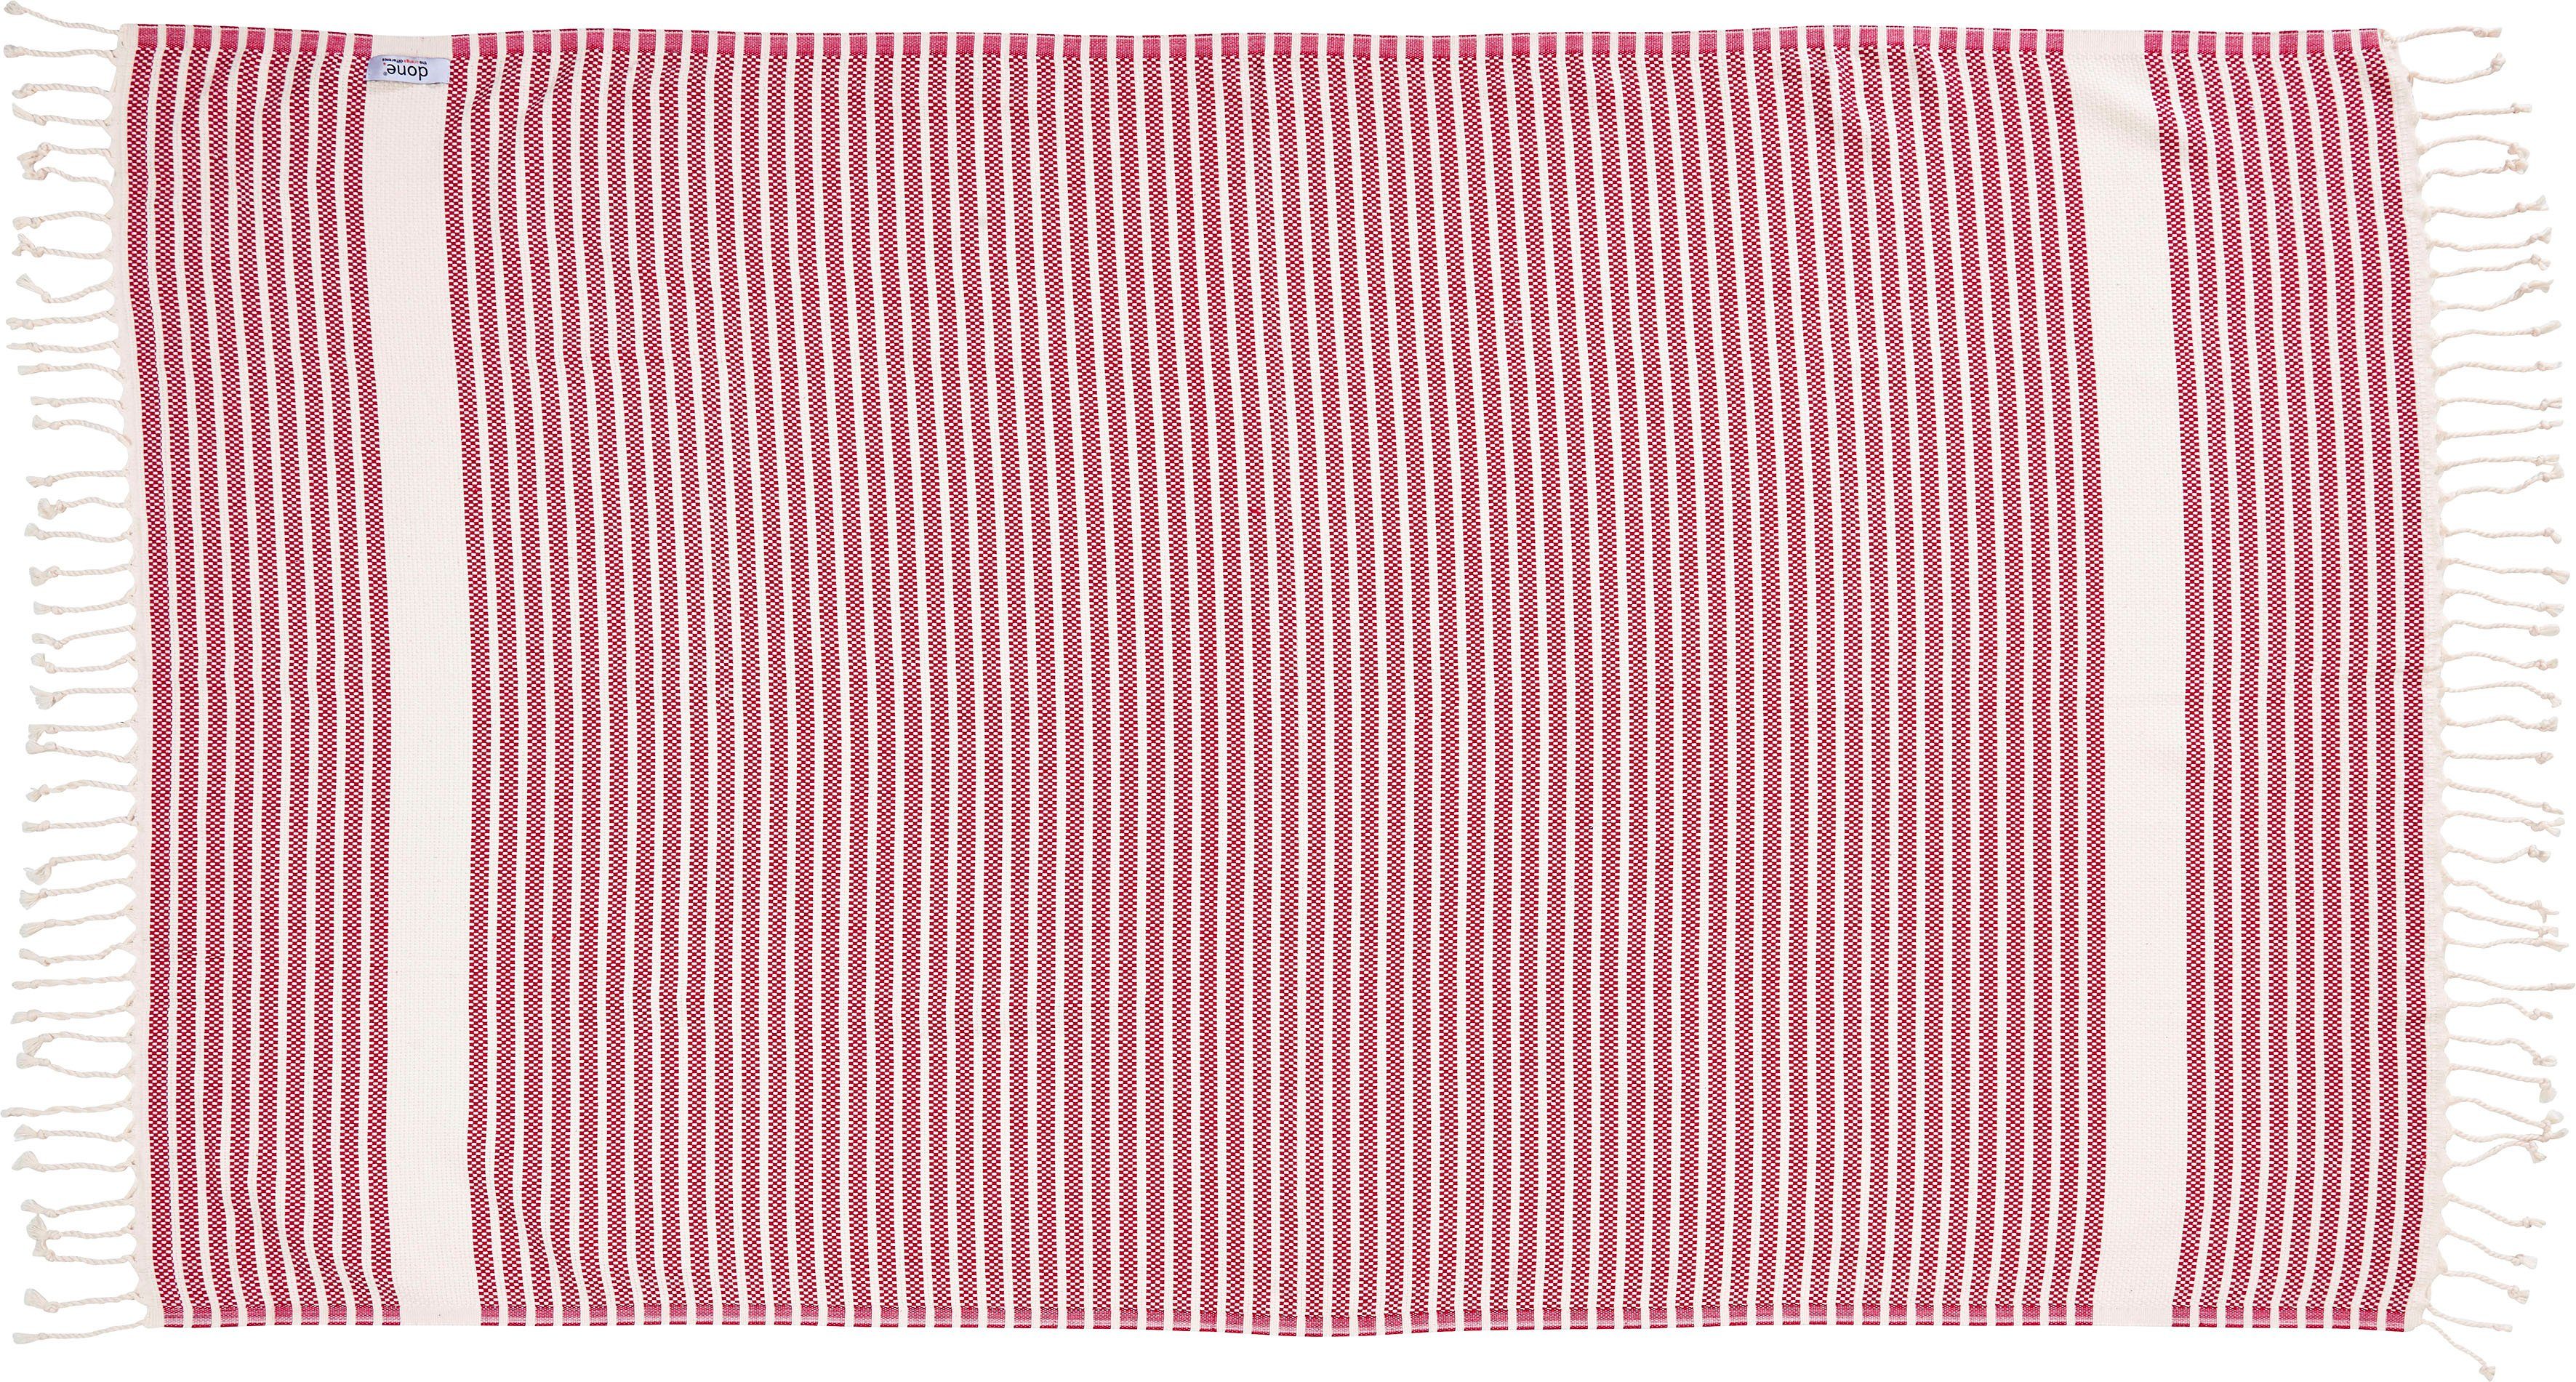 Plaid Lounge Leichtes pink/beige Plaid Fransen mit Stripes, done.®, geknoteten